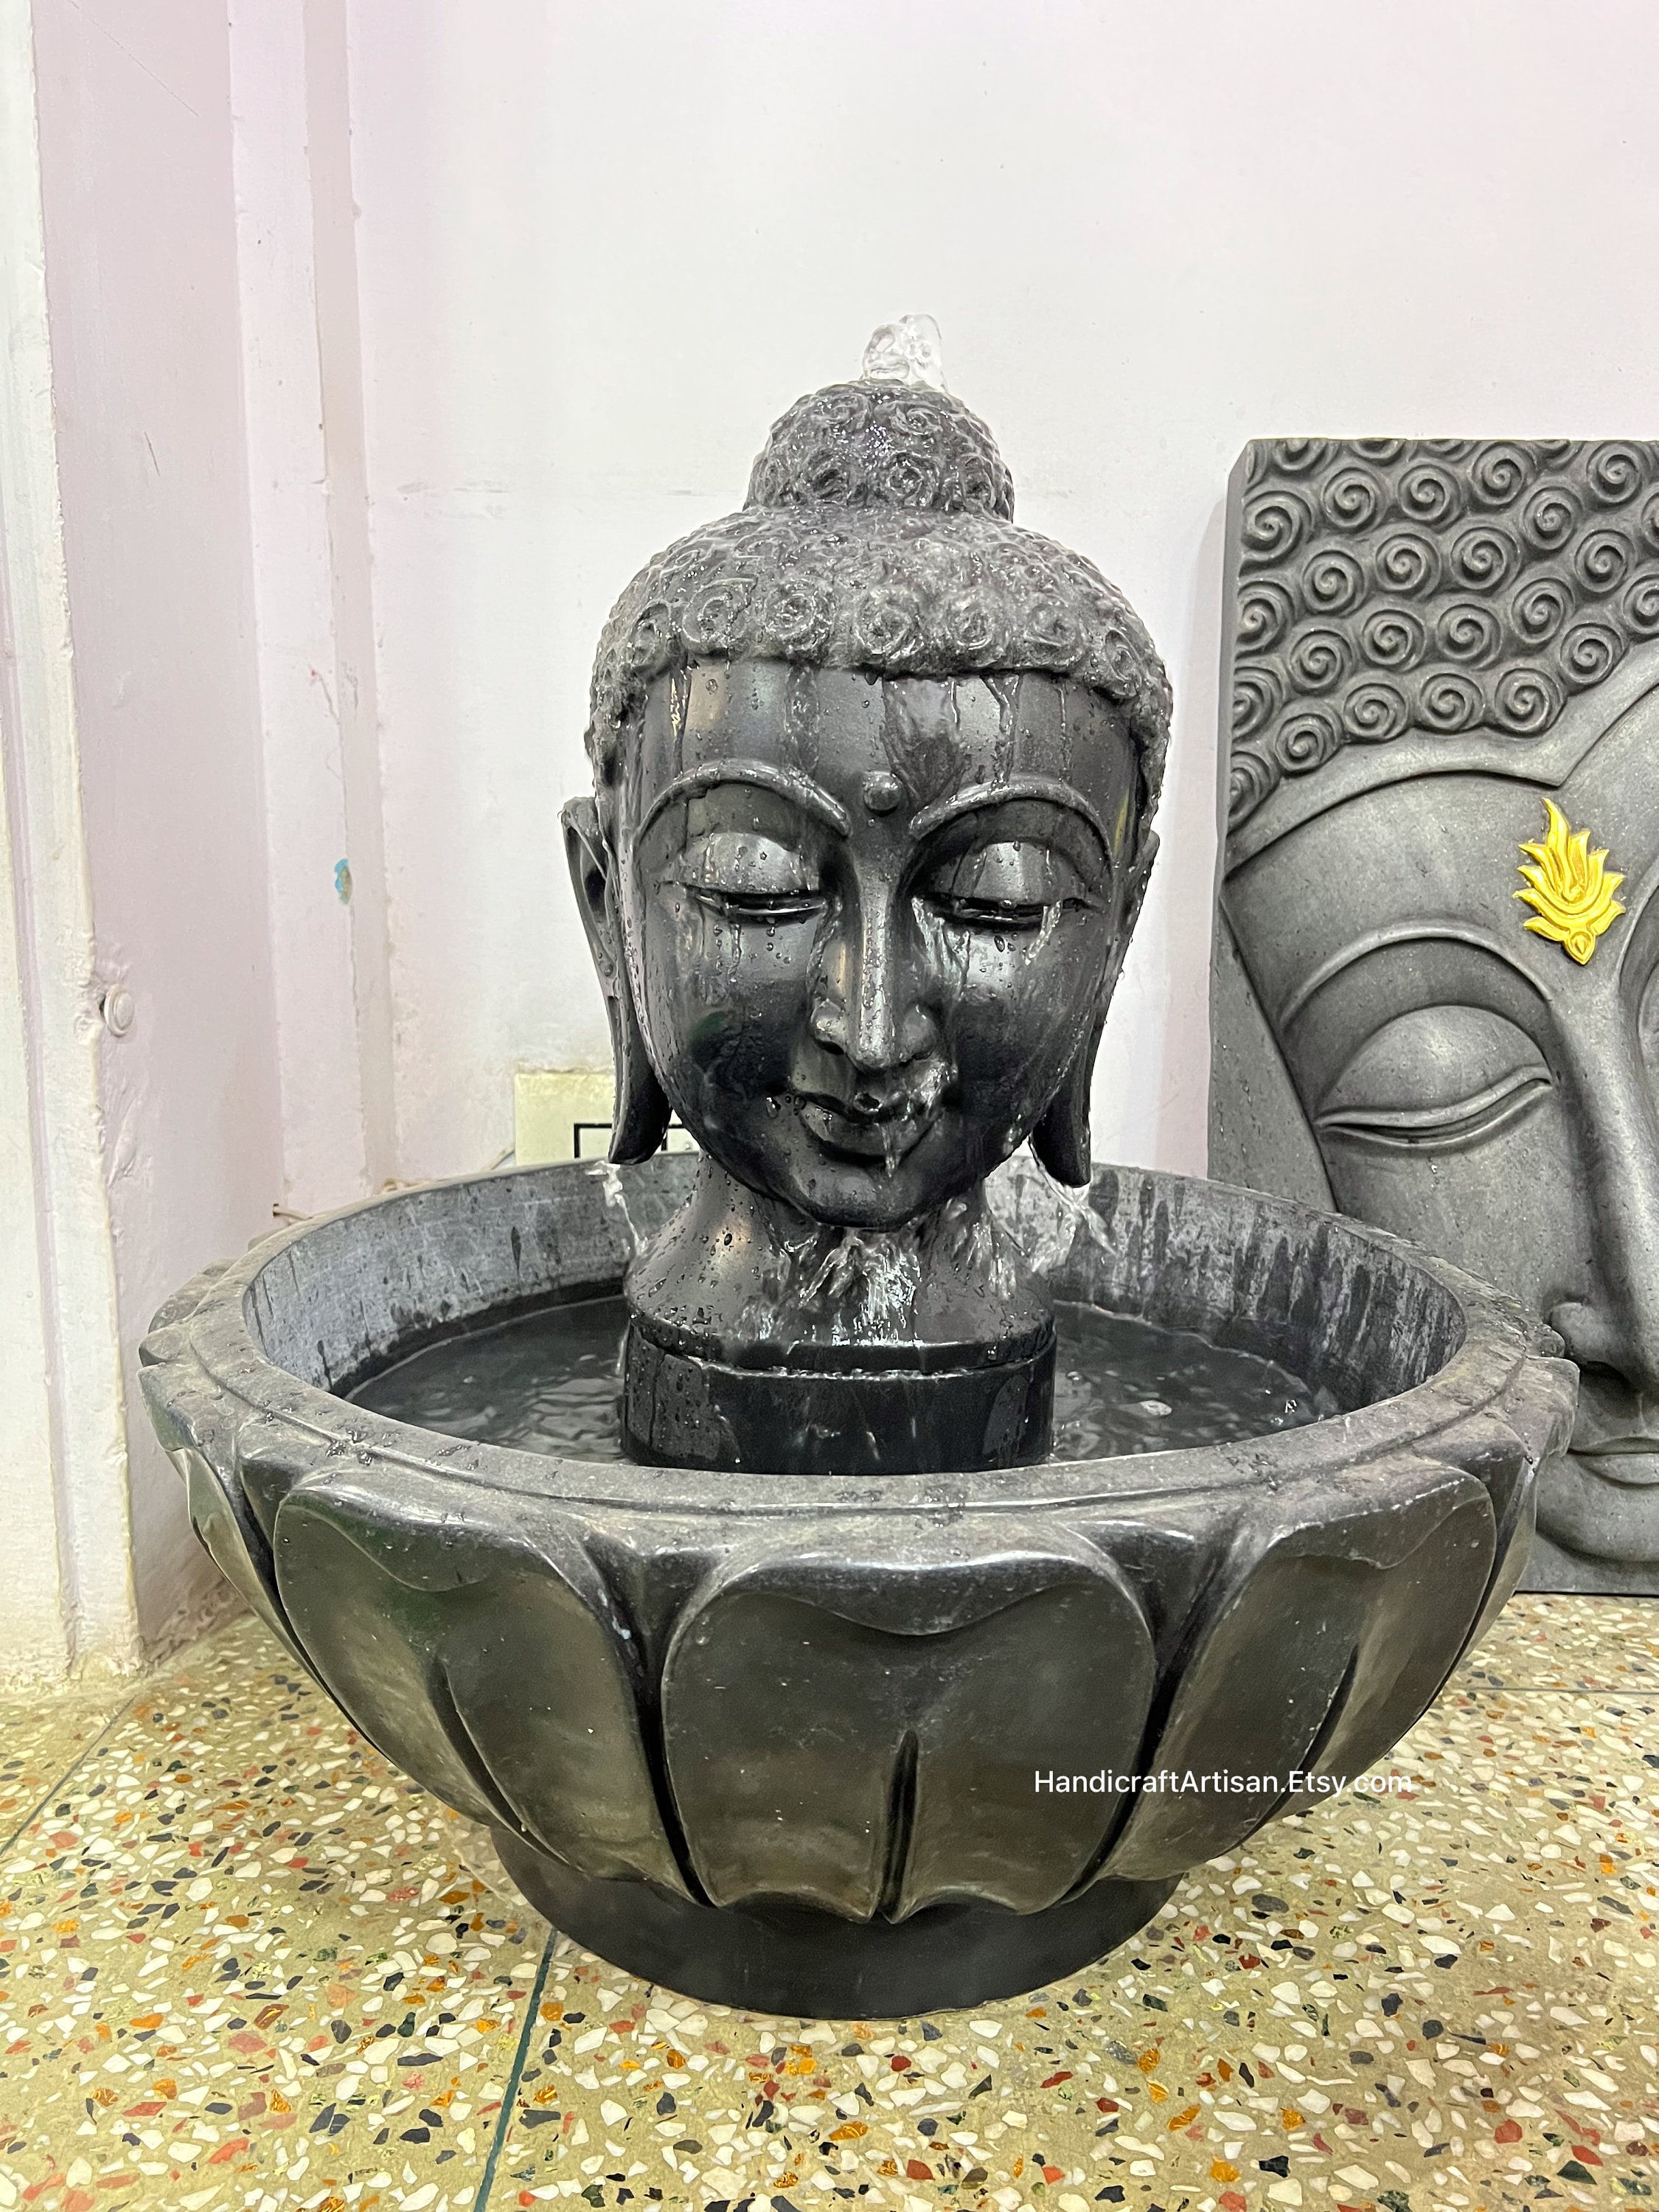 Fuente Buda Led resina, encuentra fuentes budas decorativas online